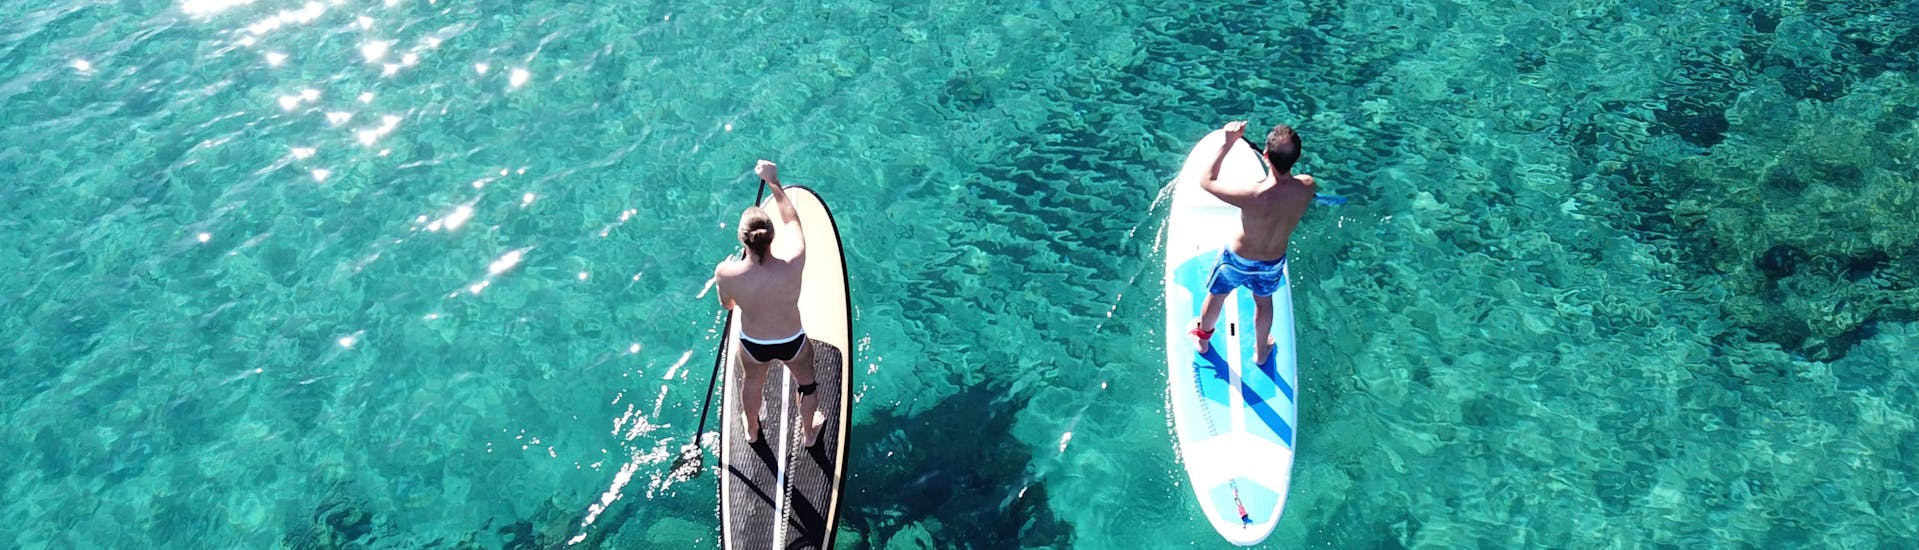 Ibiza: Een jonge vrouw leert surfen.